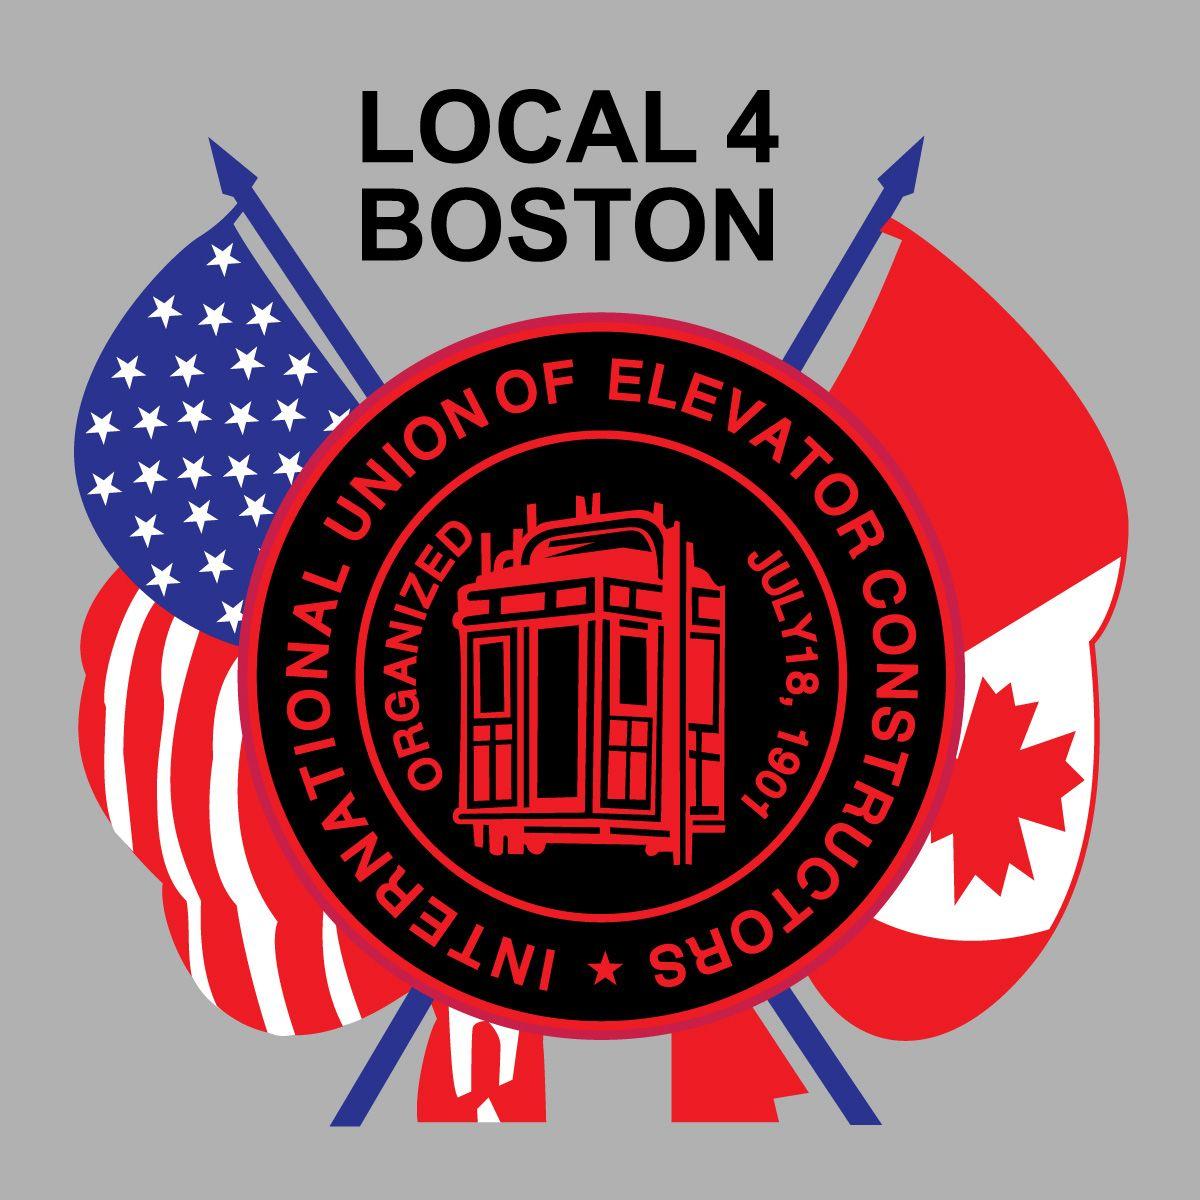 IUEC Logo - IUEC LOGO WITH FLAGS